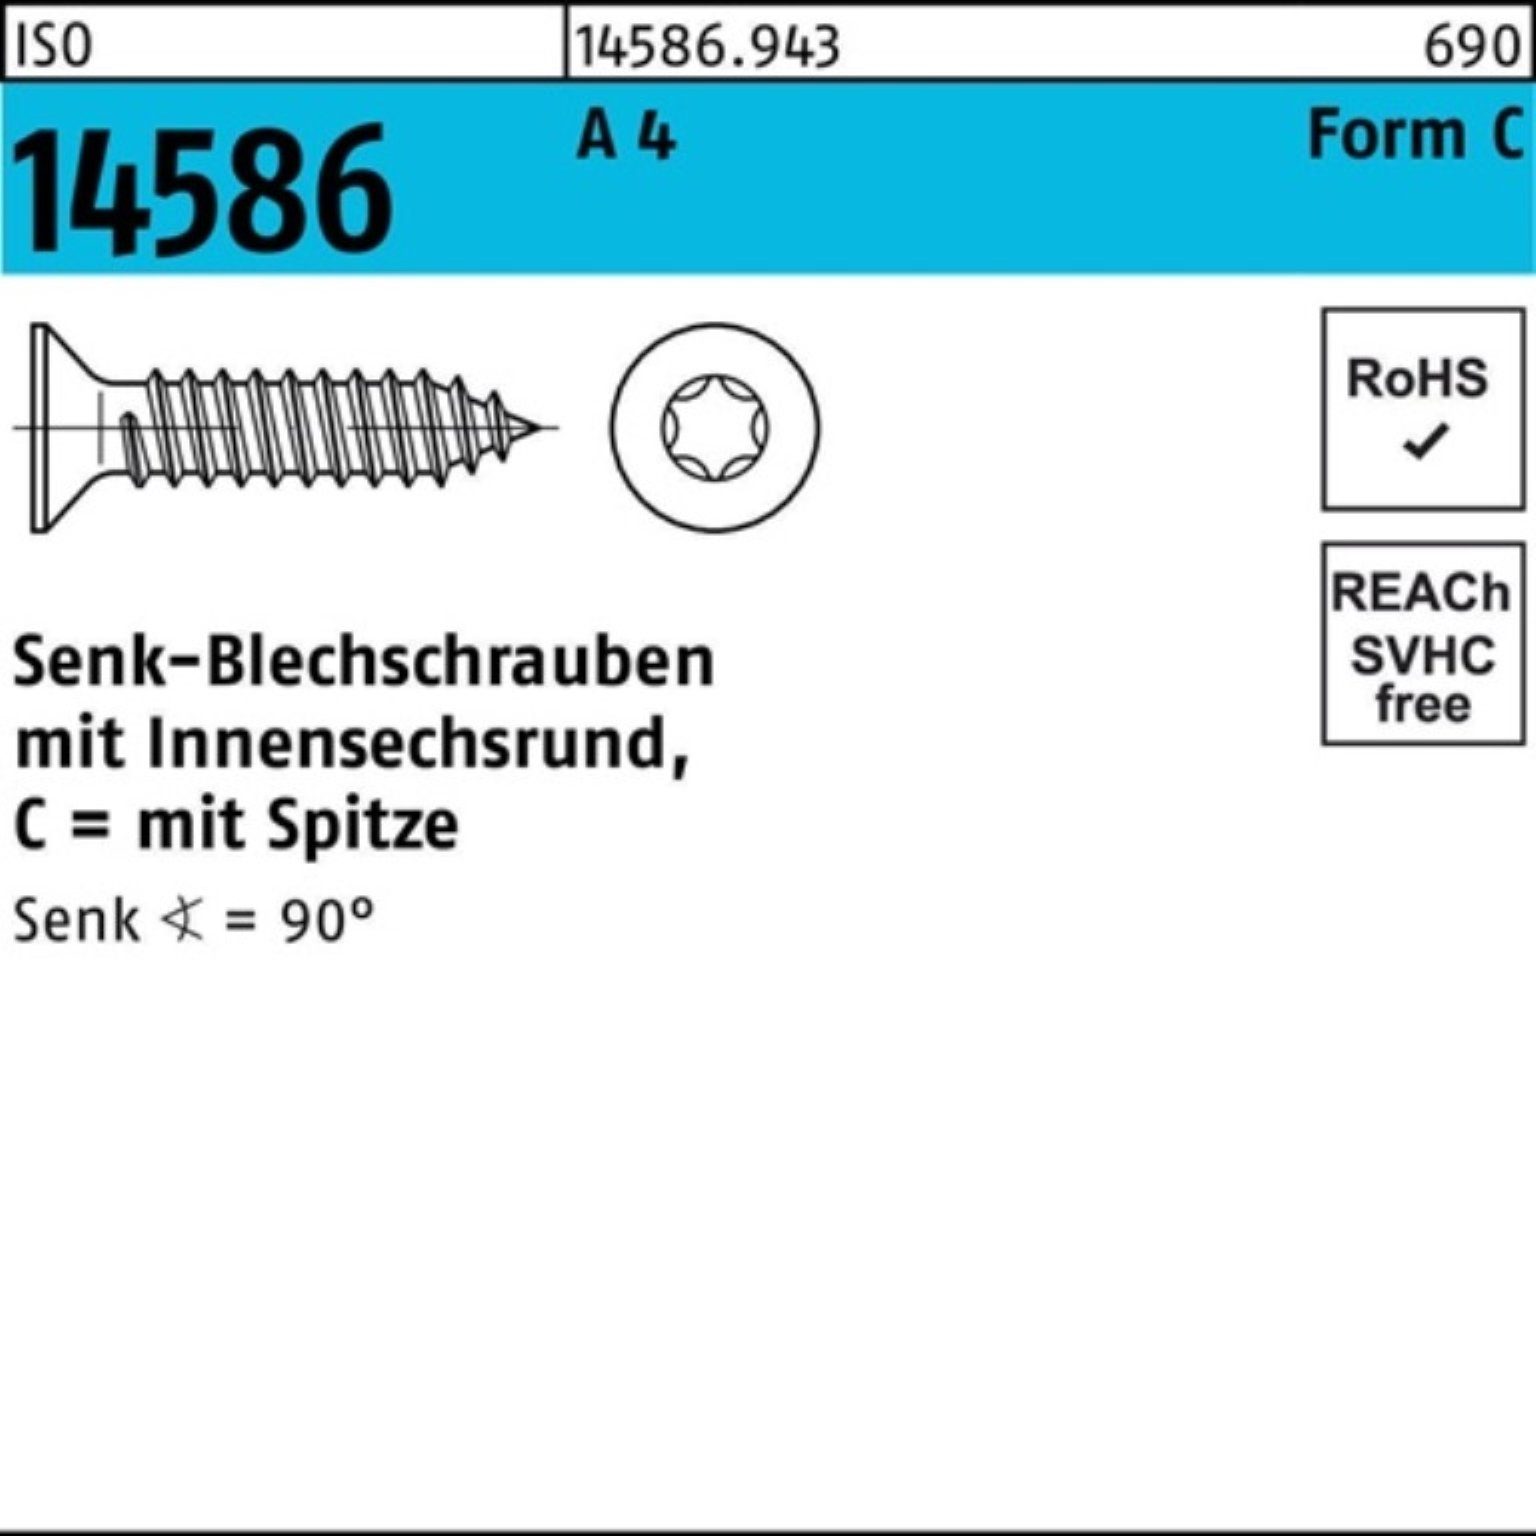 Reyher Schraube 500er Pack Senkblechschraube ISO 14586 ISR/Spitze 4,2x 60-T20 A 4 500